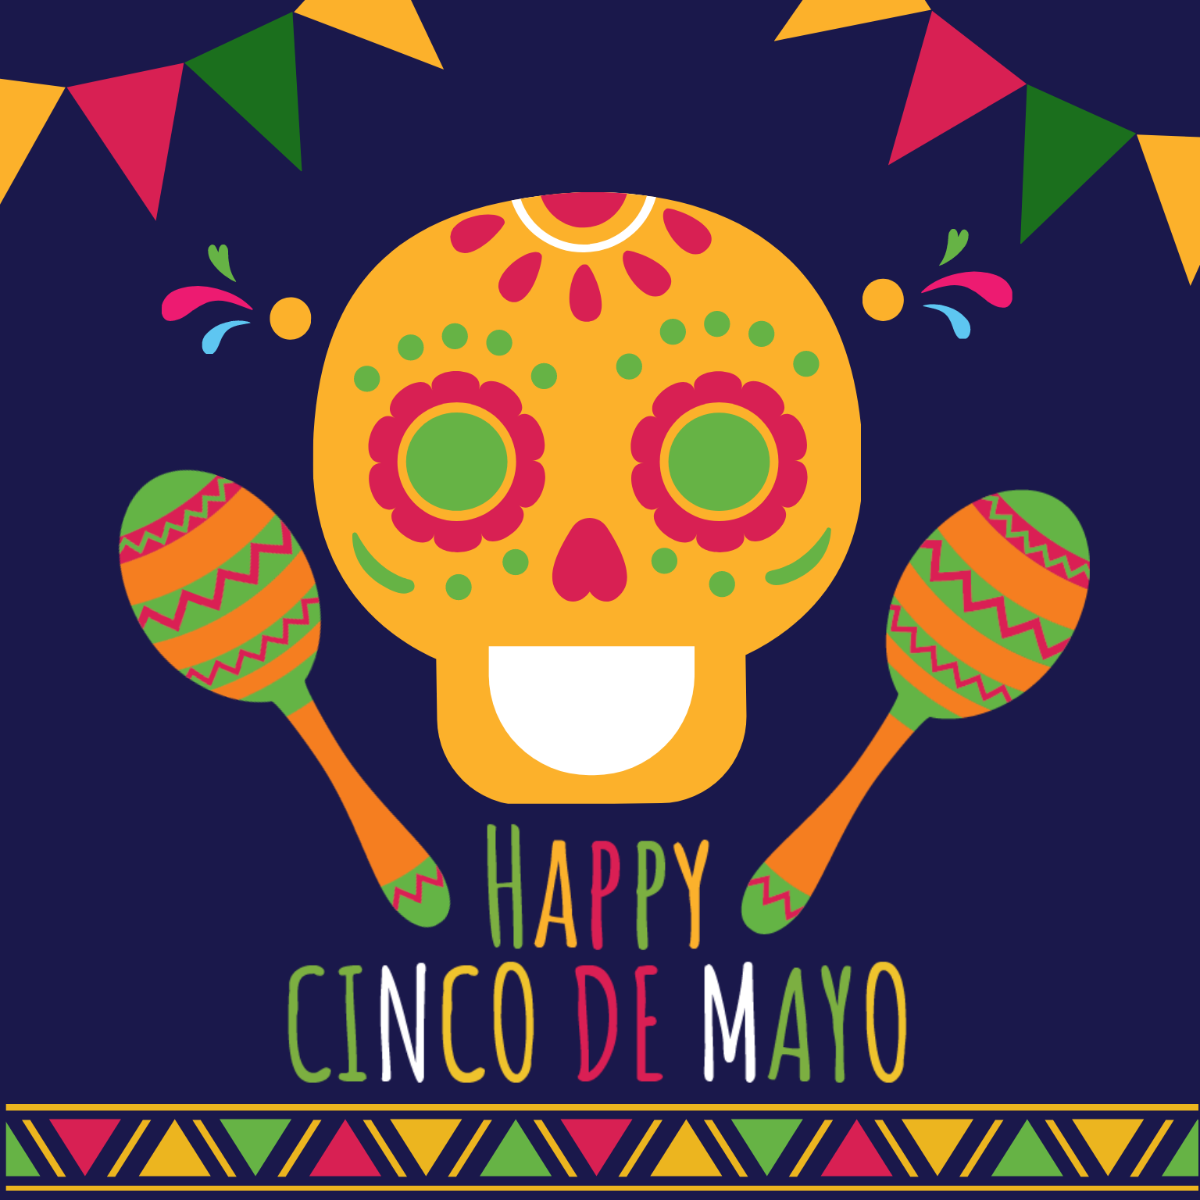 Free Happy Cinco de Mayo Vector Template